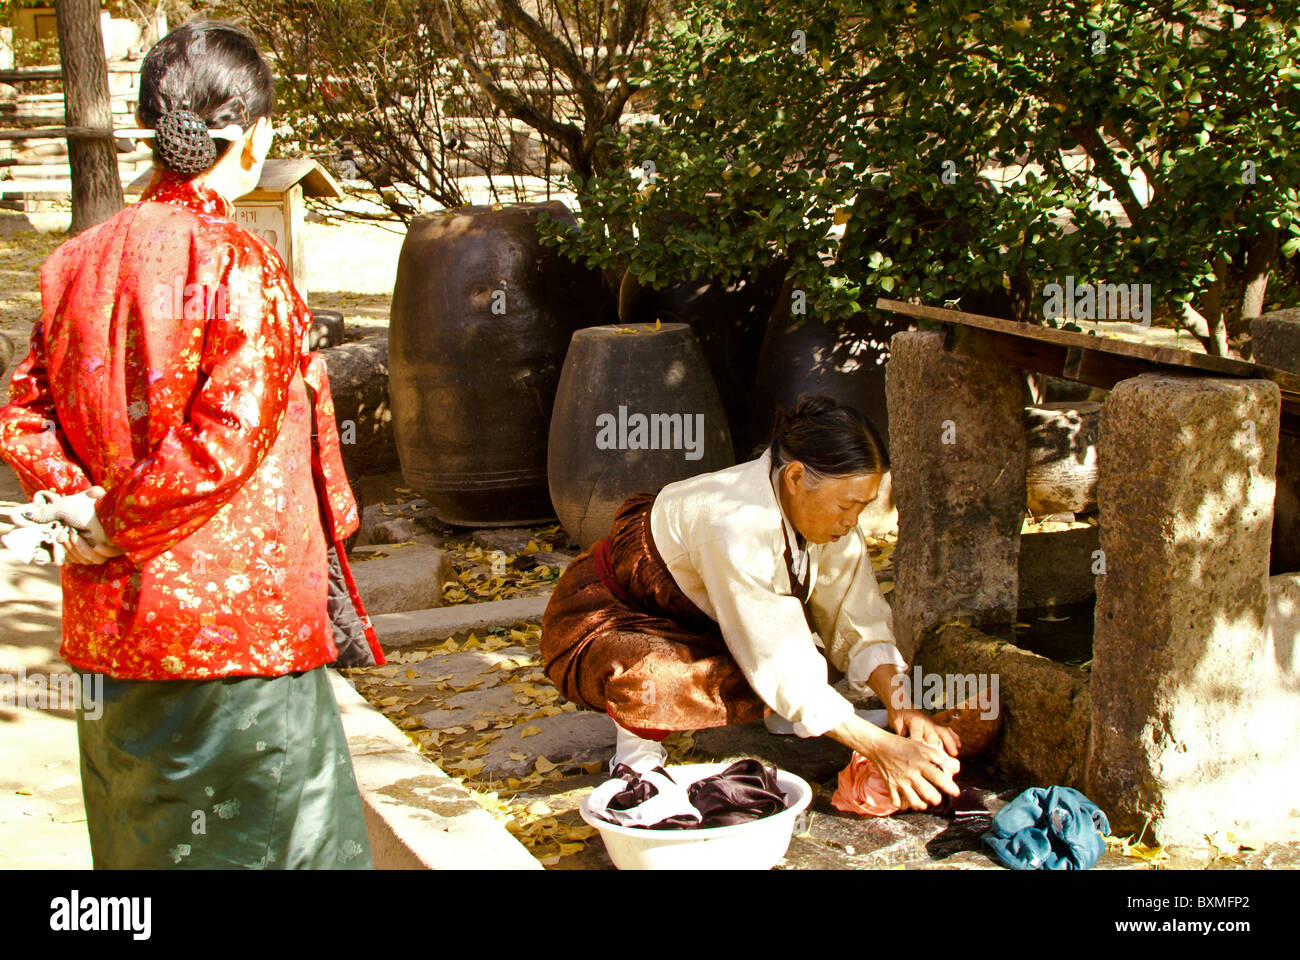 Woman washing clothes, Korean Folk Village, South Korea Stock Photo